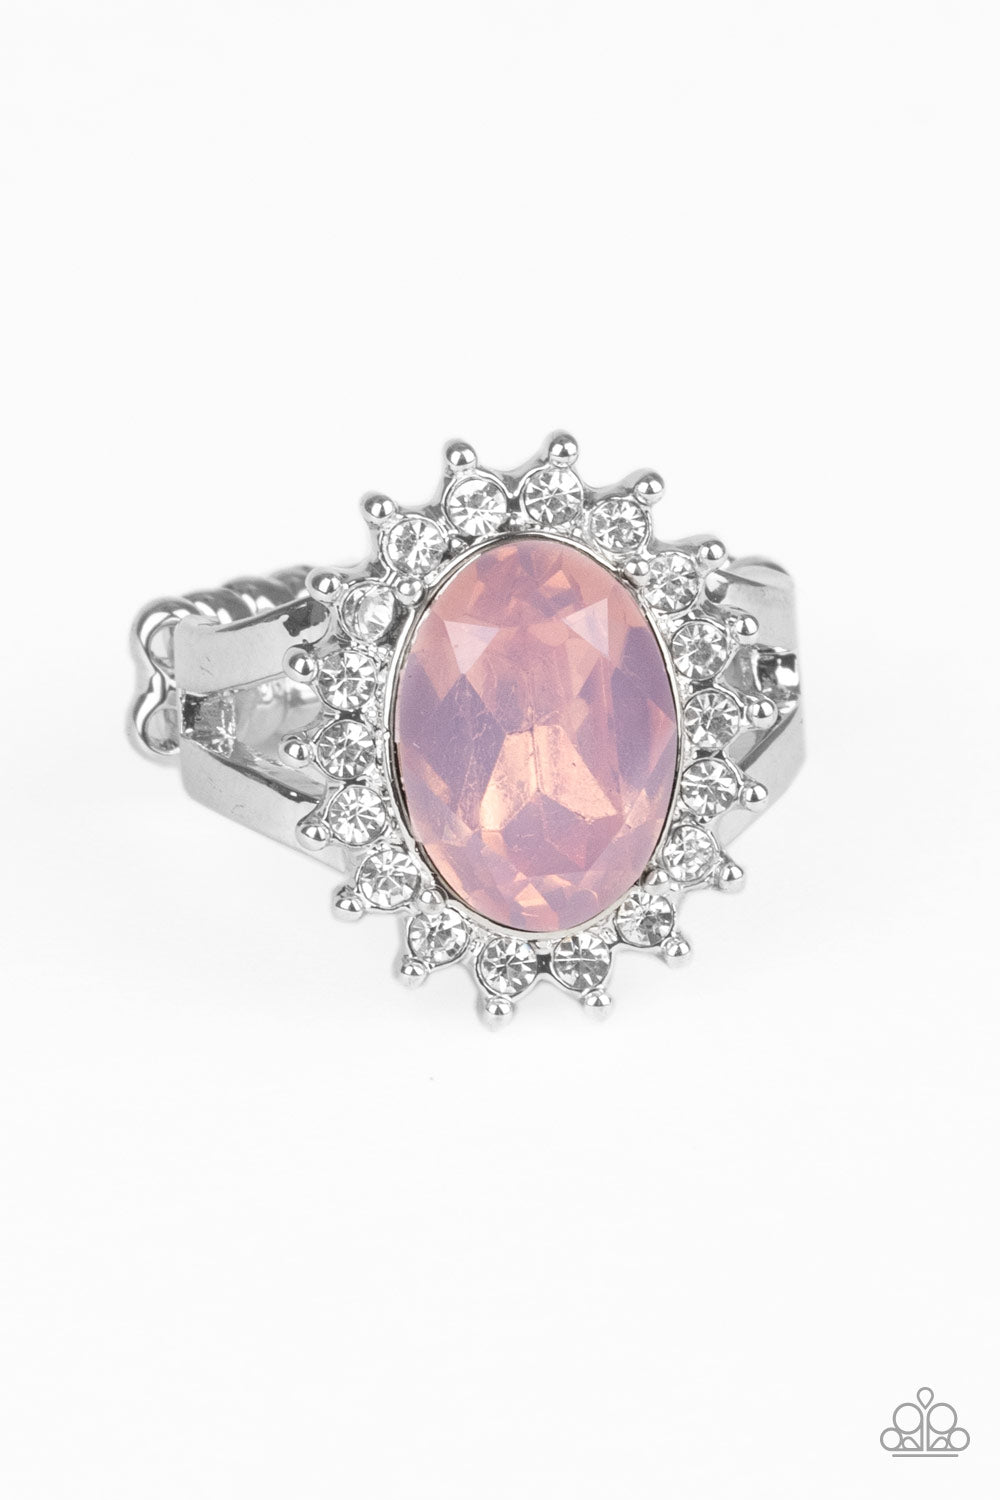 Iridescently Illuminated - pink - Paparazzi ring